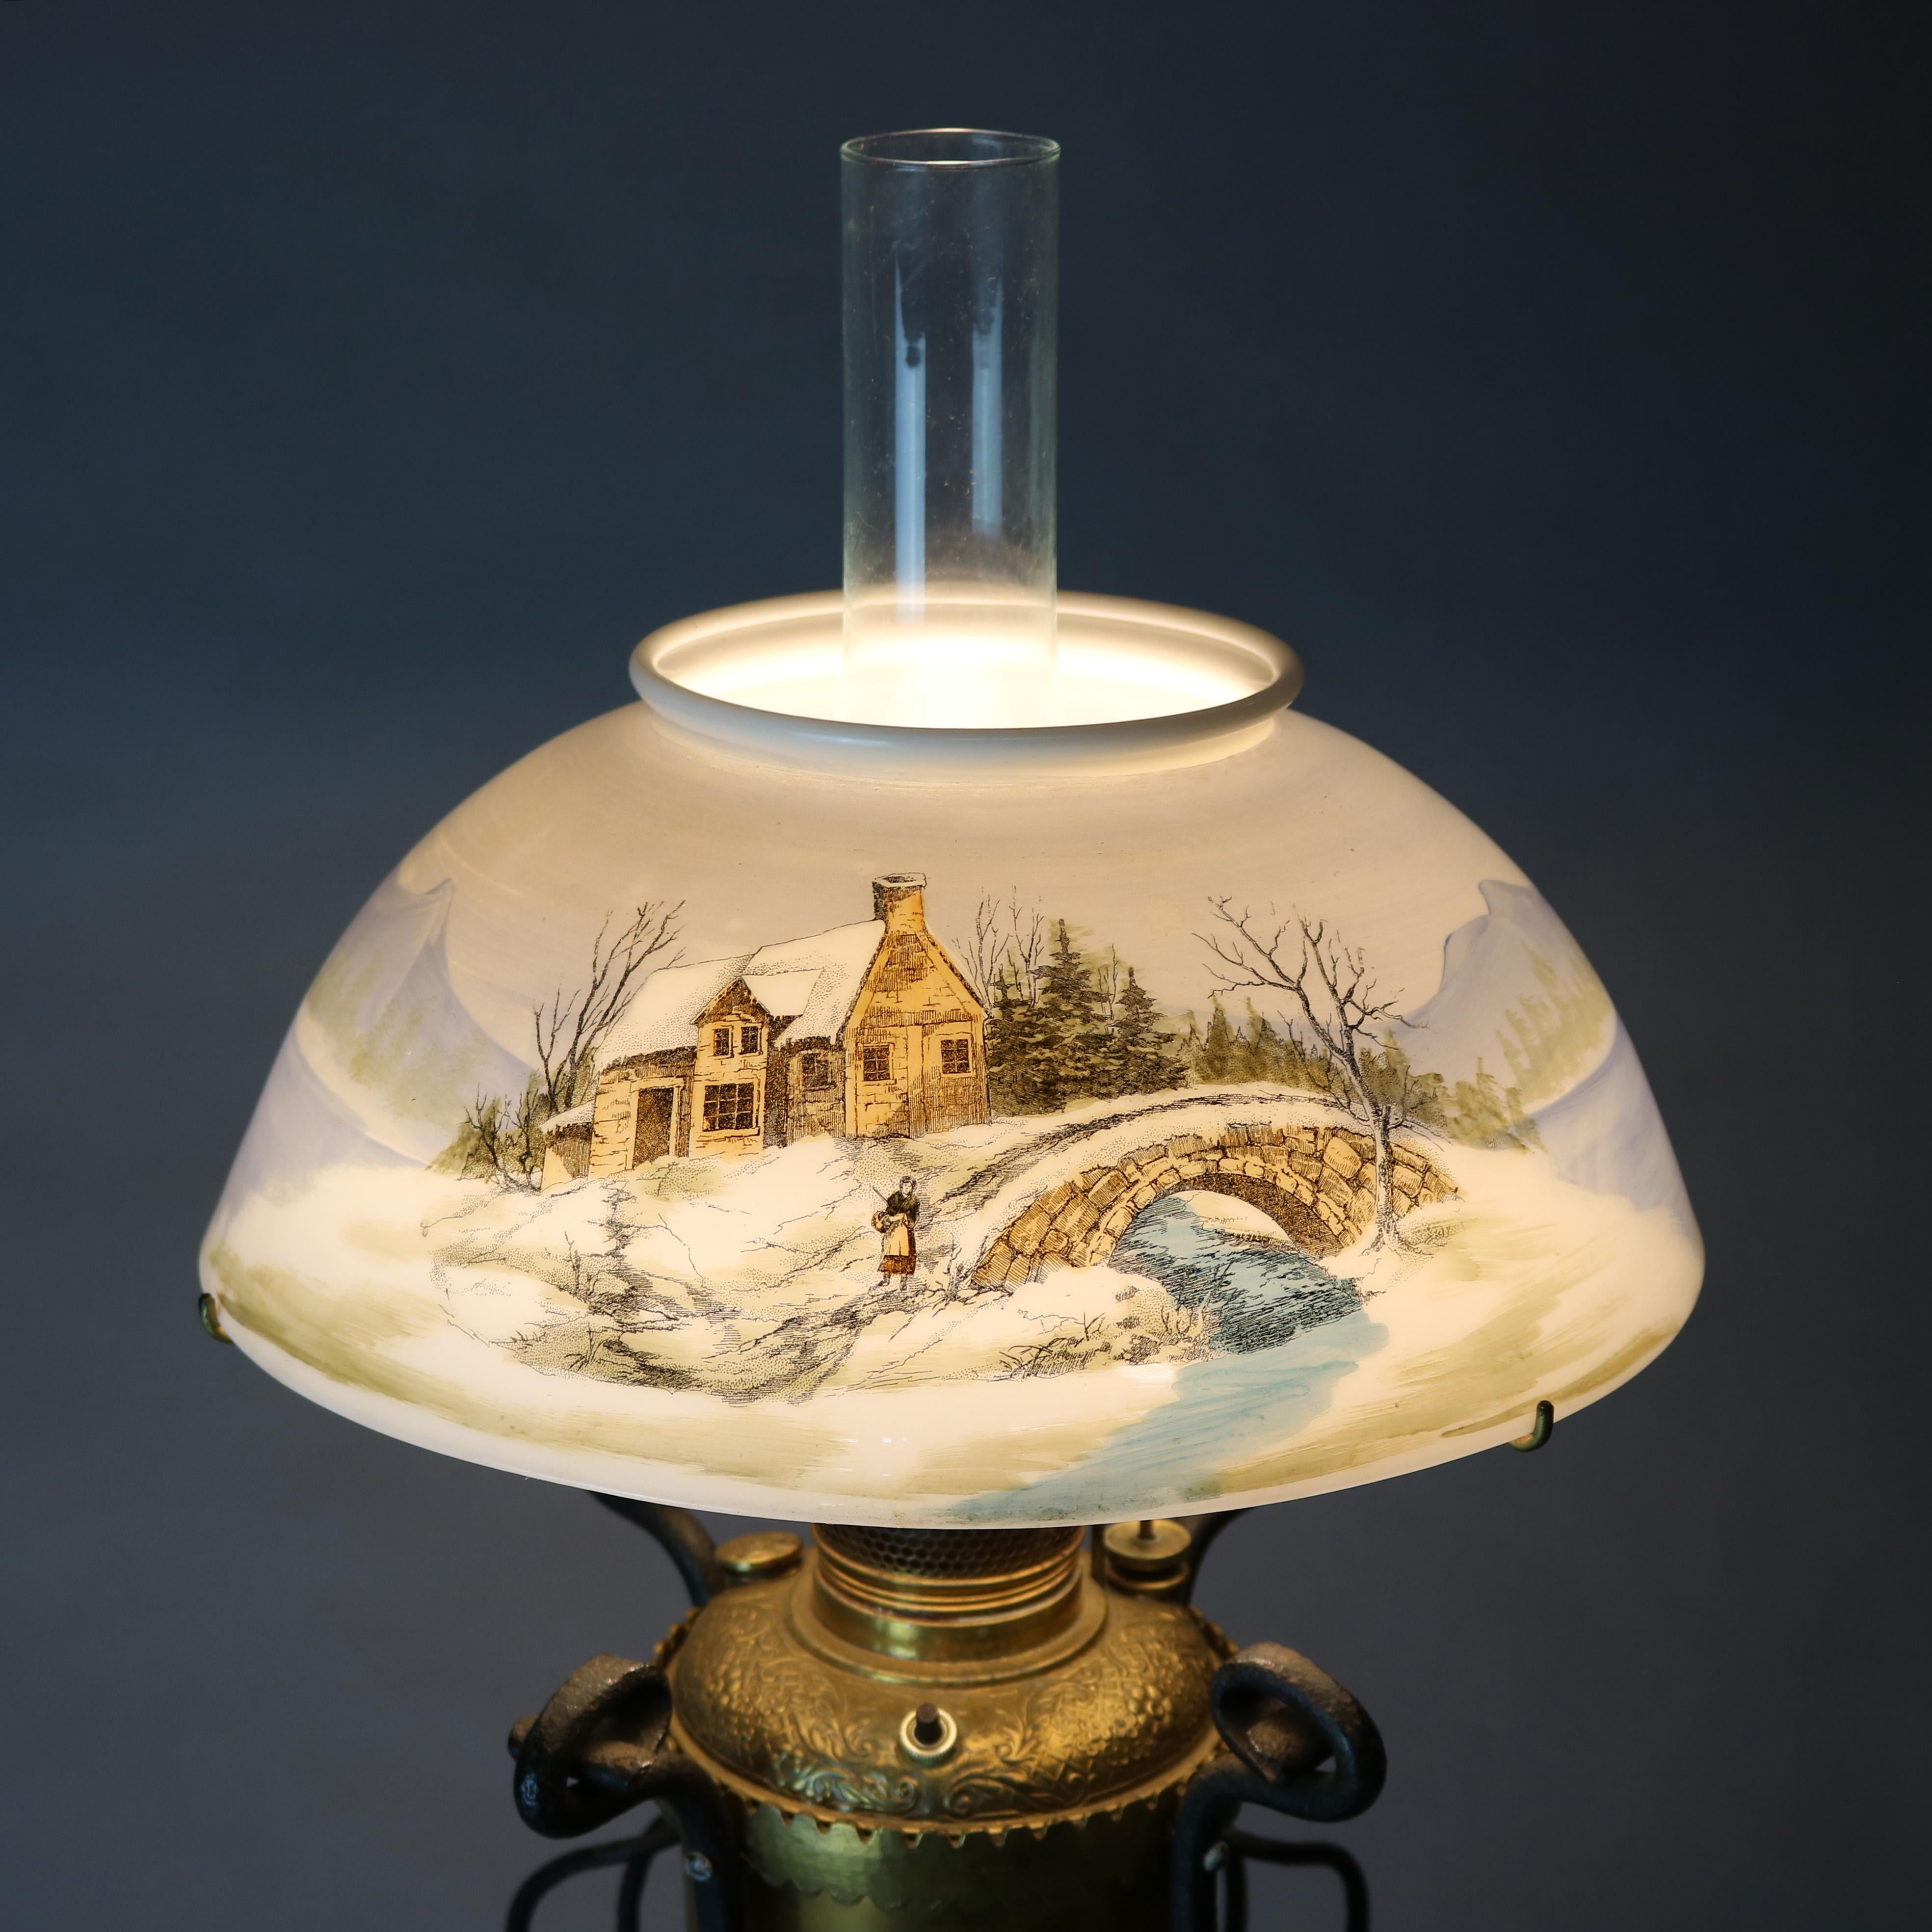 Une lampe de table antique Arts & Crafts offre une fontaine en forme d'urne en laiton avec des feuilles et des volutes en relief sur la partie supérieure, assise dans un cadre en fer forgé avec des pieds en forme de volutes et surmontée d'un